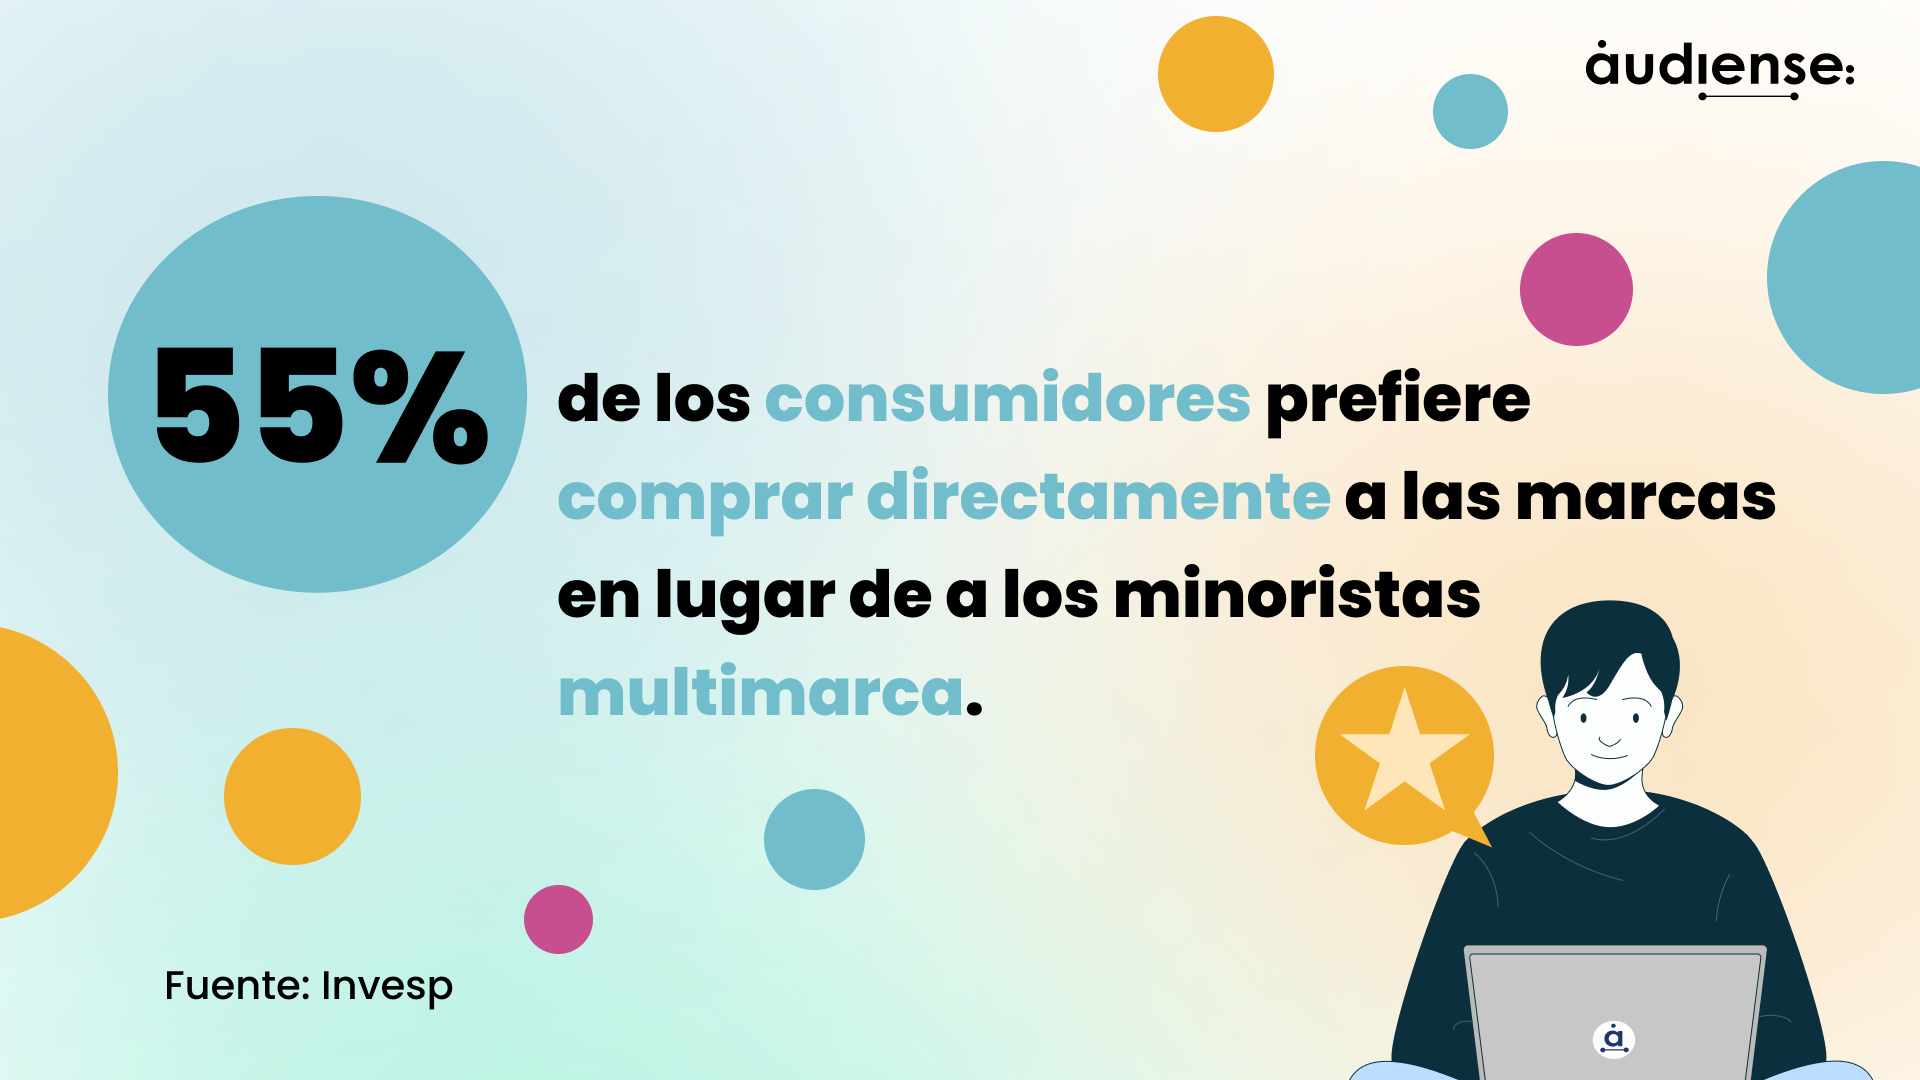 Audiense blog - El 55% de los consumidores prefiere comprar directamente a las marcas en lugar de a los minoristas multimarca